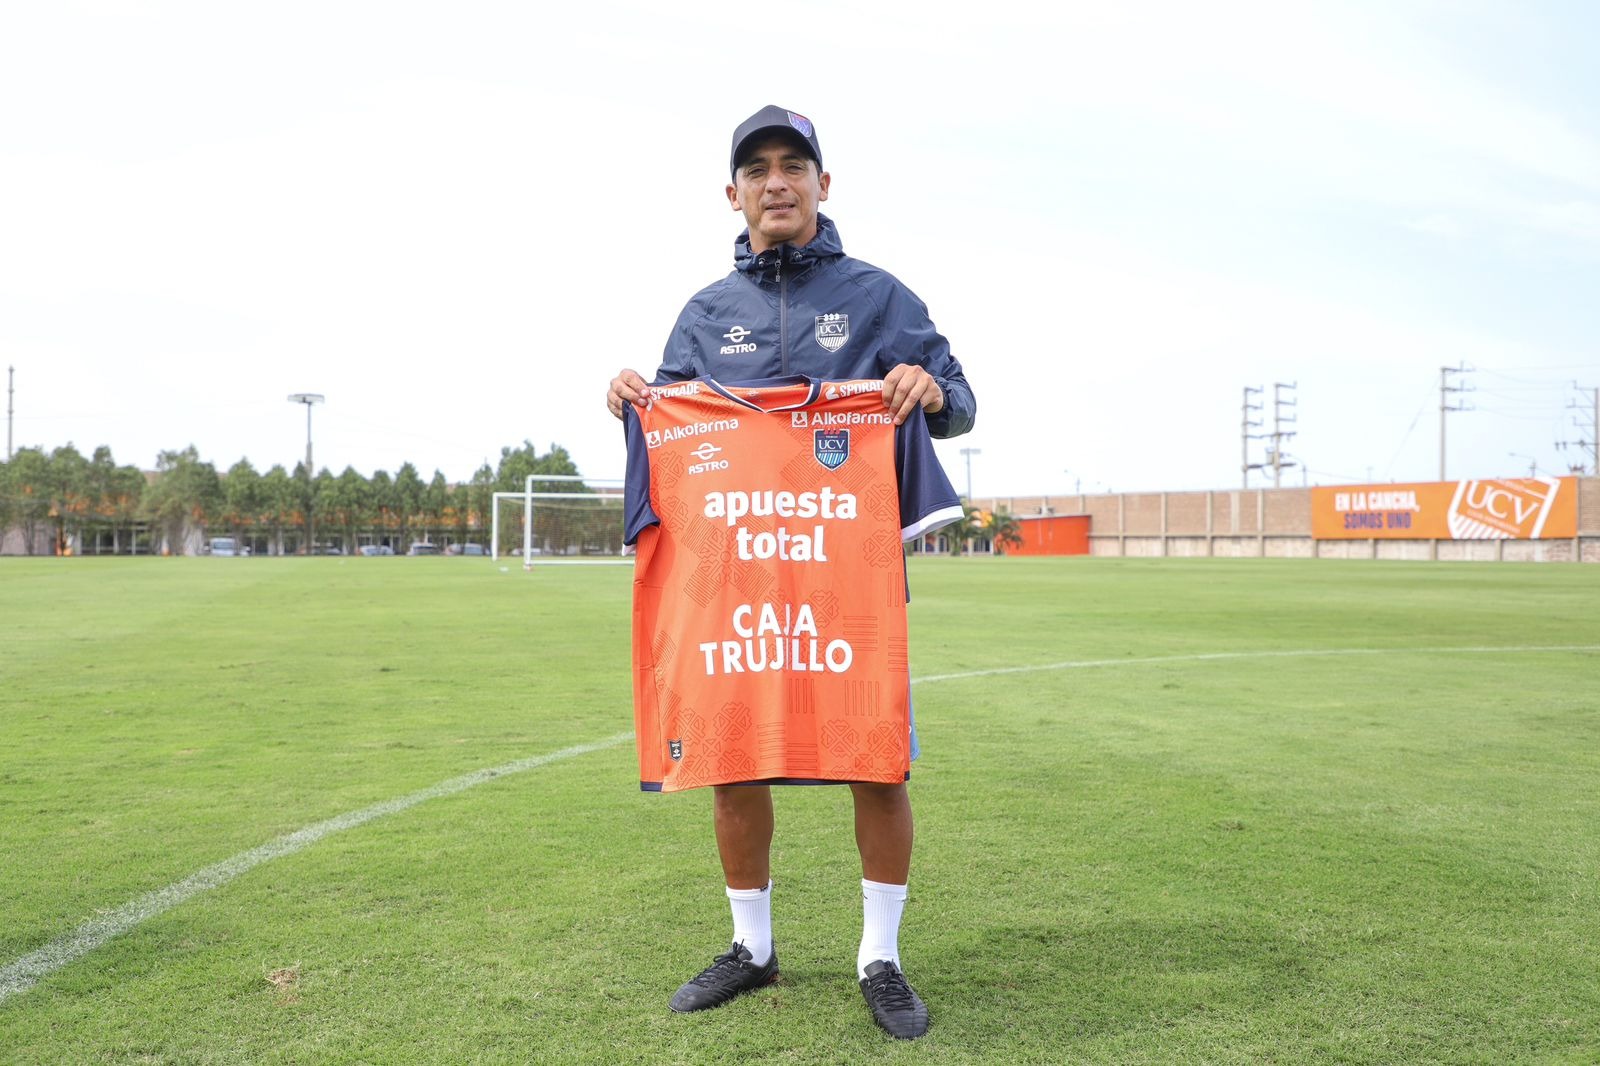 Guillermo Salas es el nuevo entrenador del club César Vallejo. | Foto: @clubucv